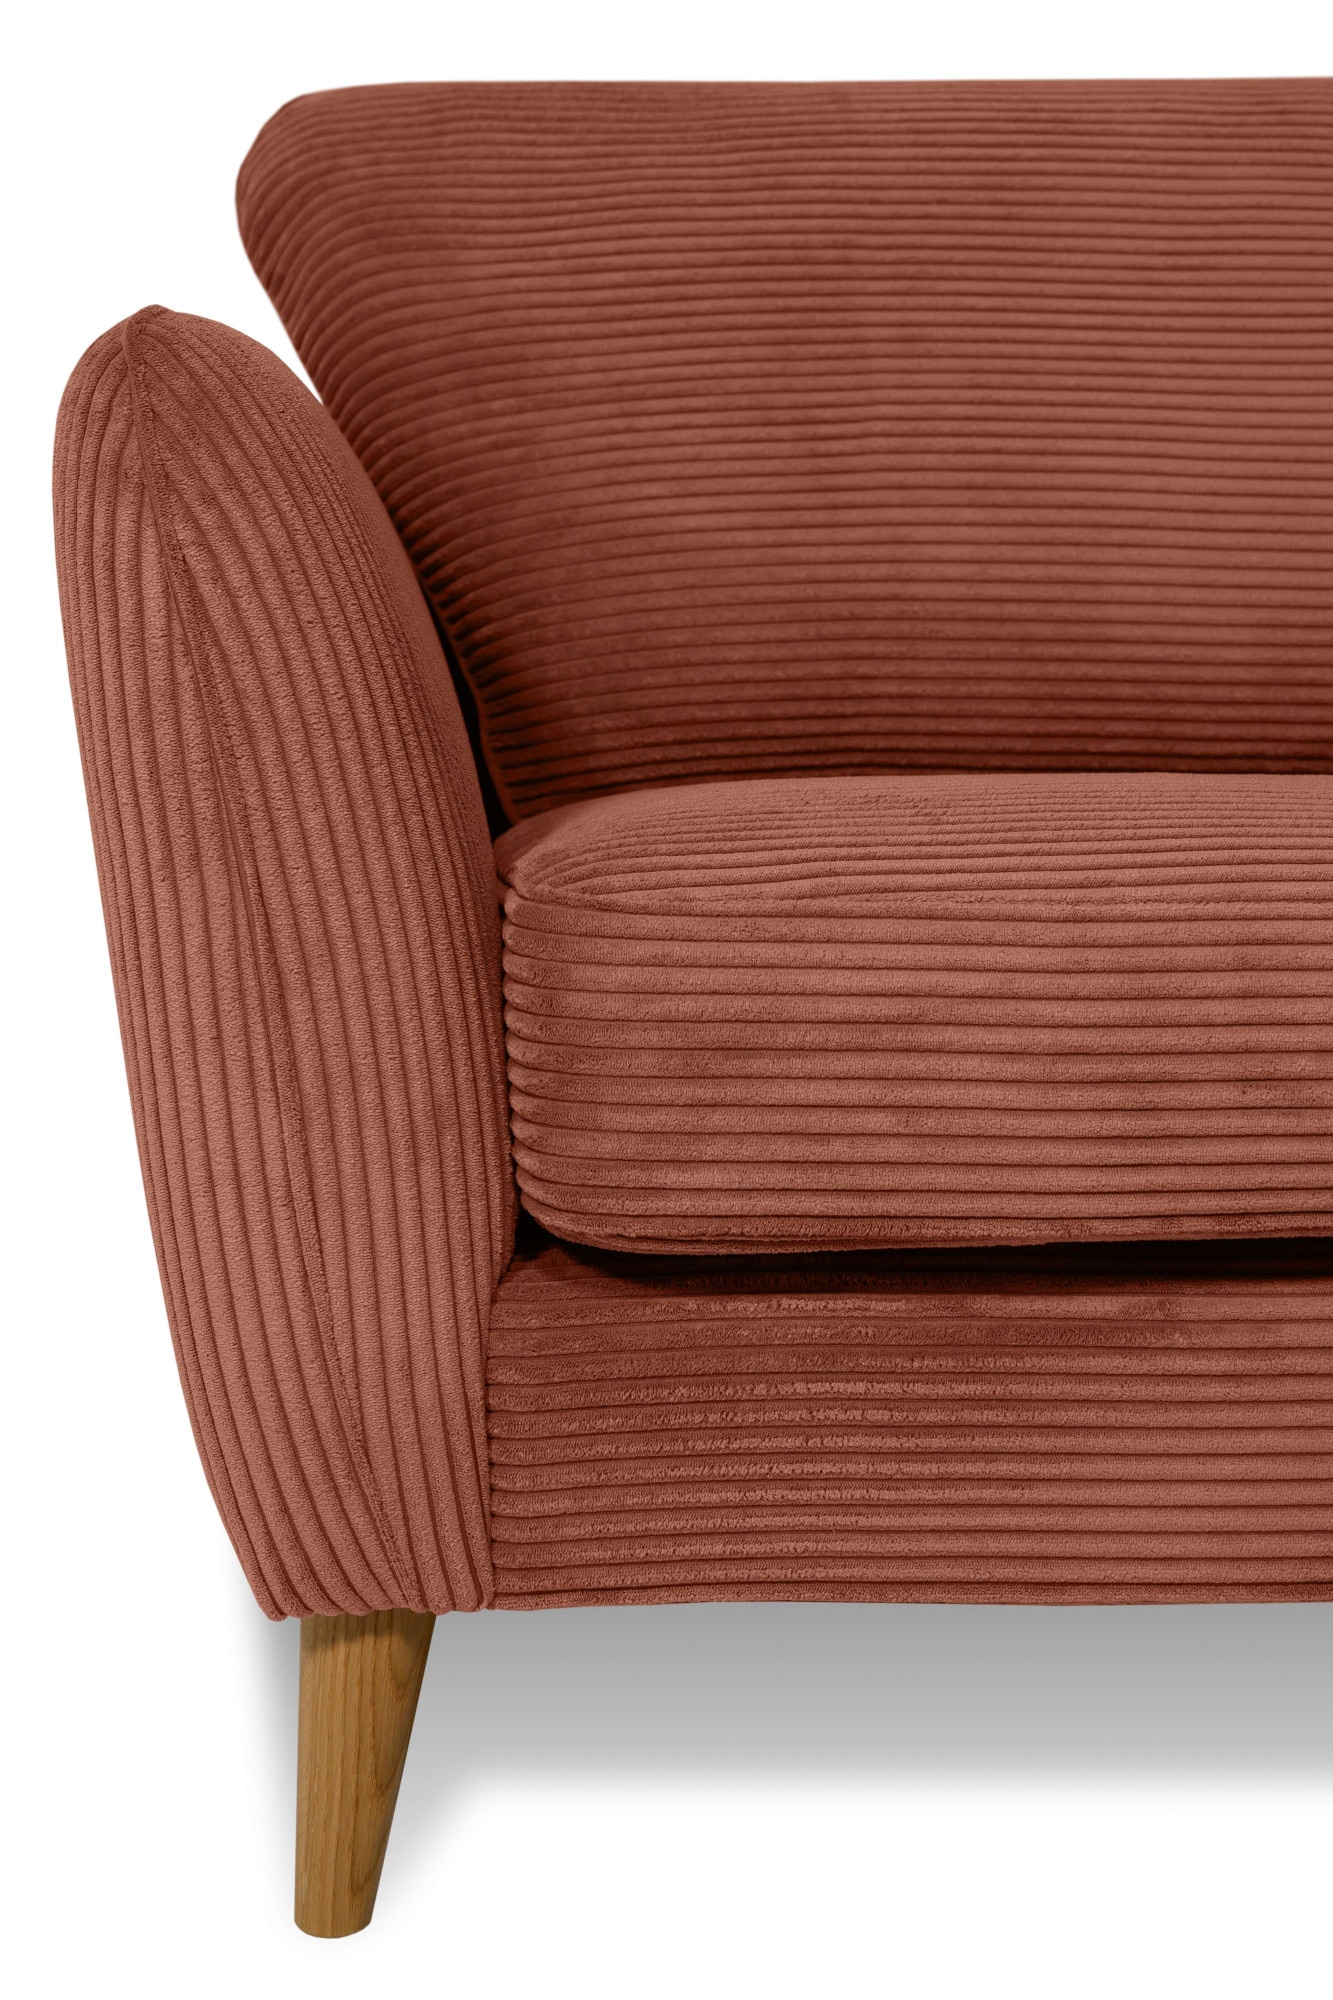 Home affaire 2-Sitzer »MARSEILLE Sofa 170 cm«, mit Massivholzbeinen aus Eiche, verschiedene Bezüge und Farbvarianten